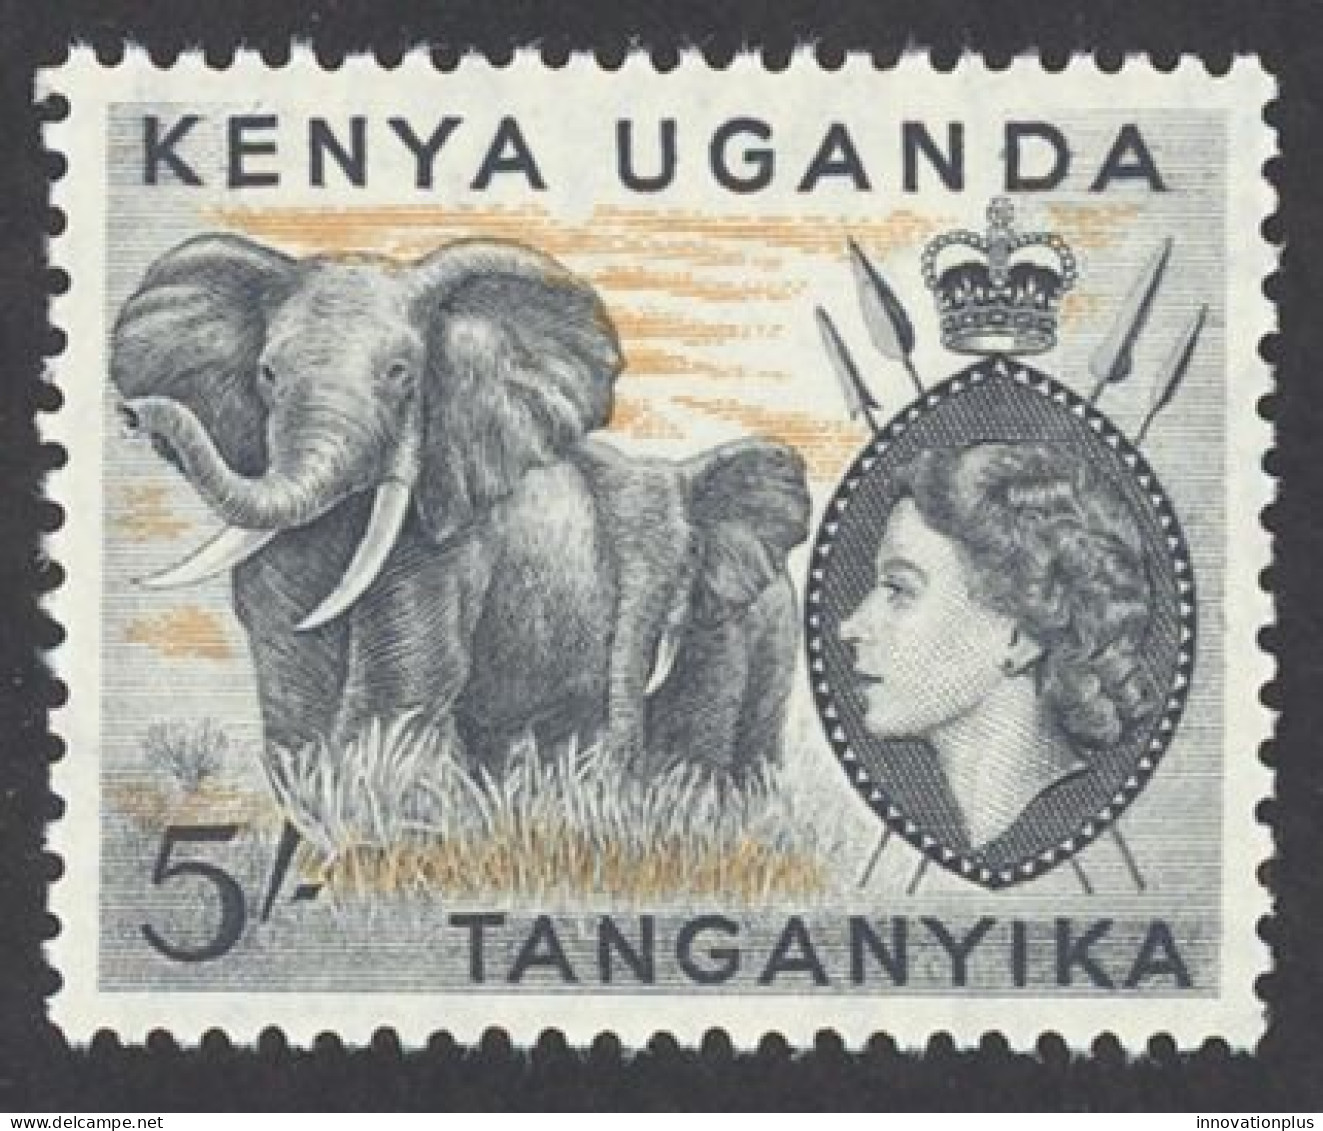 Kenya, Uganda, Tanzania Sc# 115 MNH 1954-1959 5sh Elephants - Kenya, Uganda & Tanzania